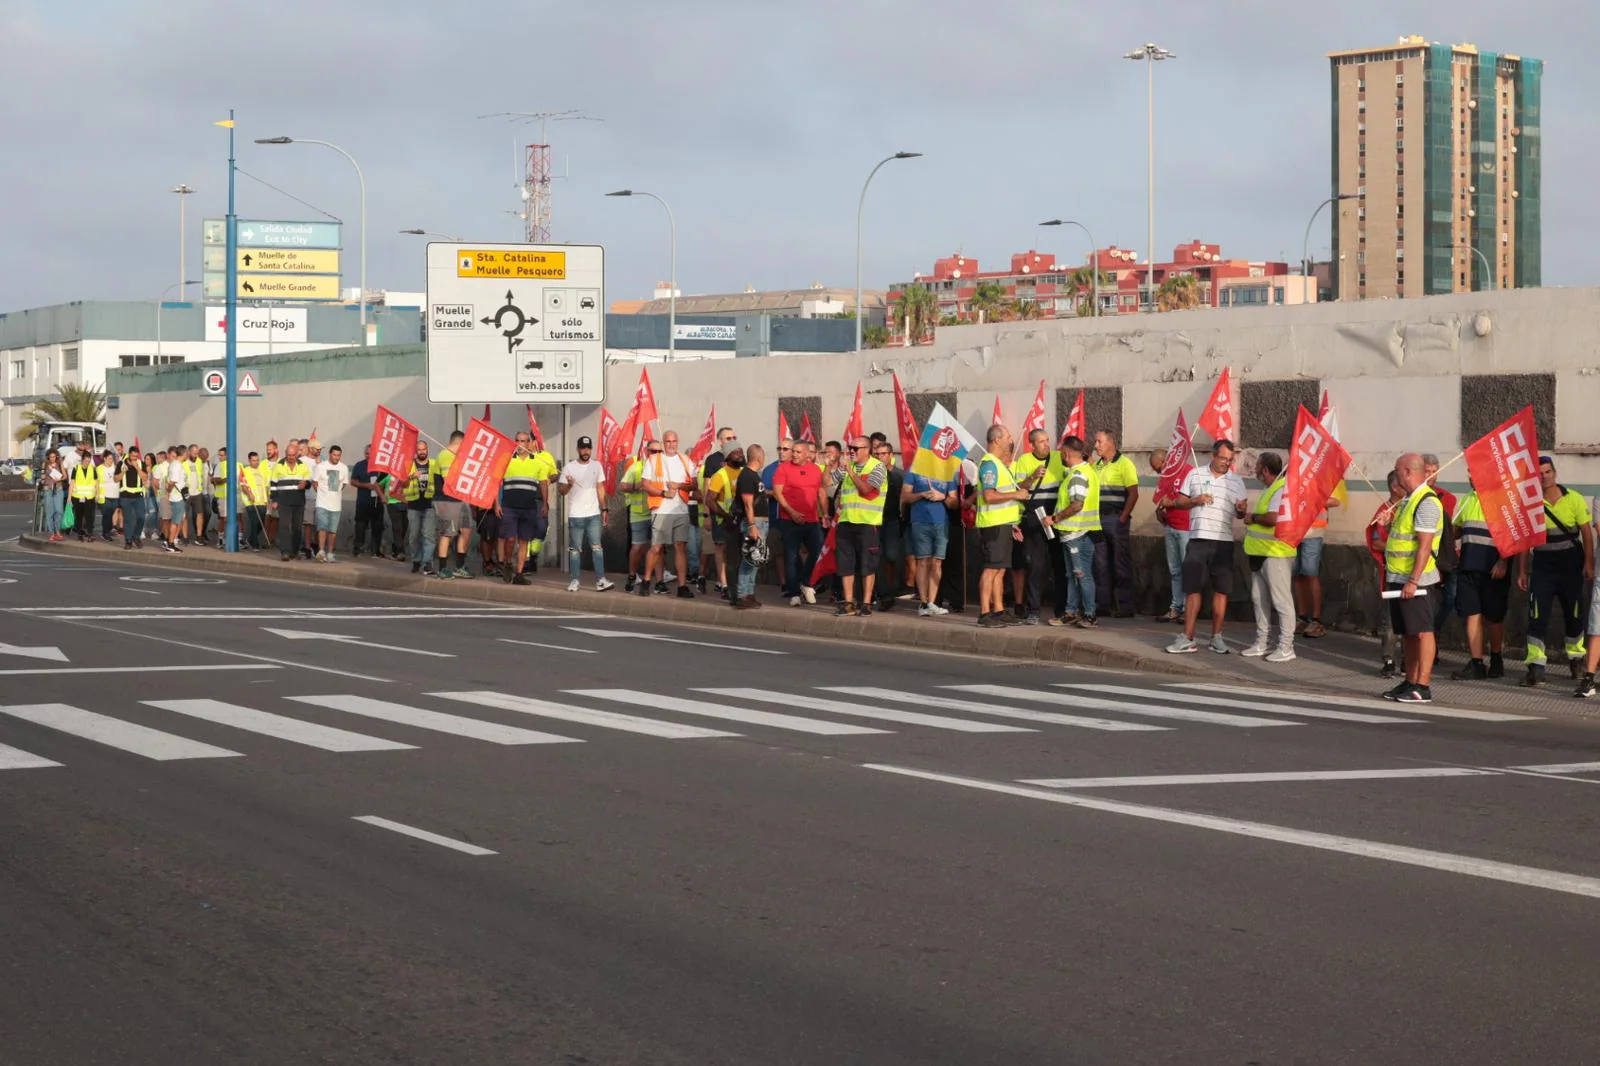 La huelga de los transportistas, en imágenes